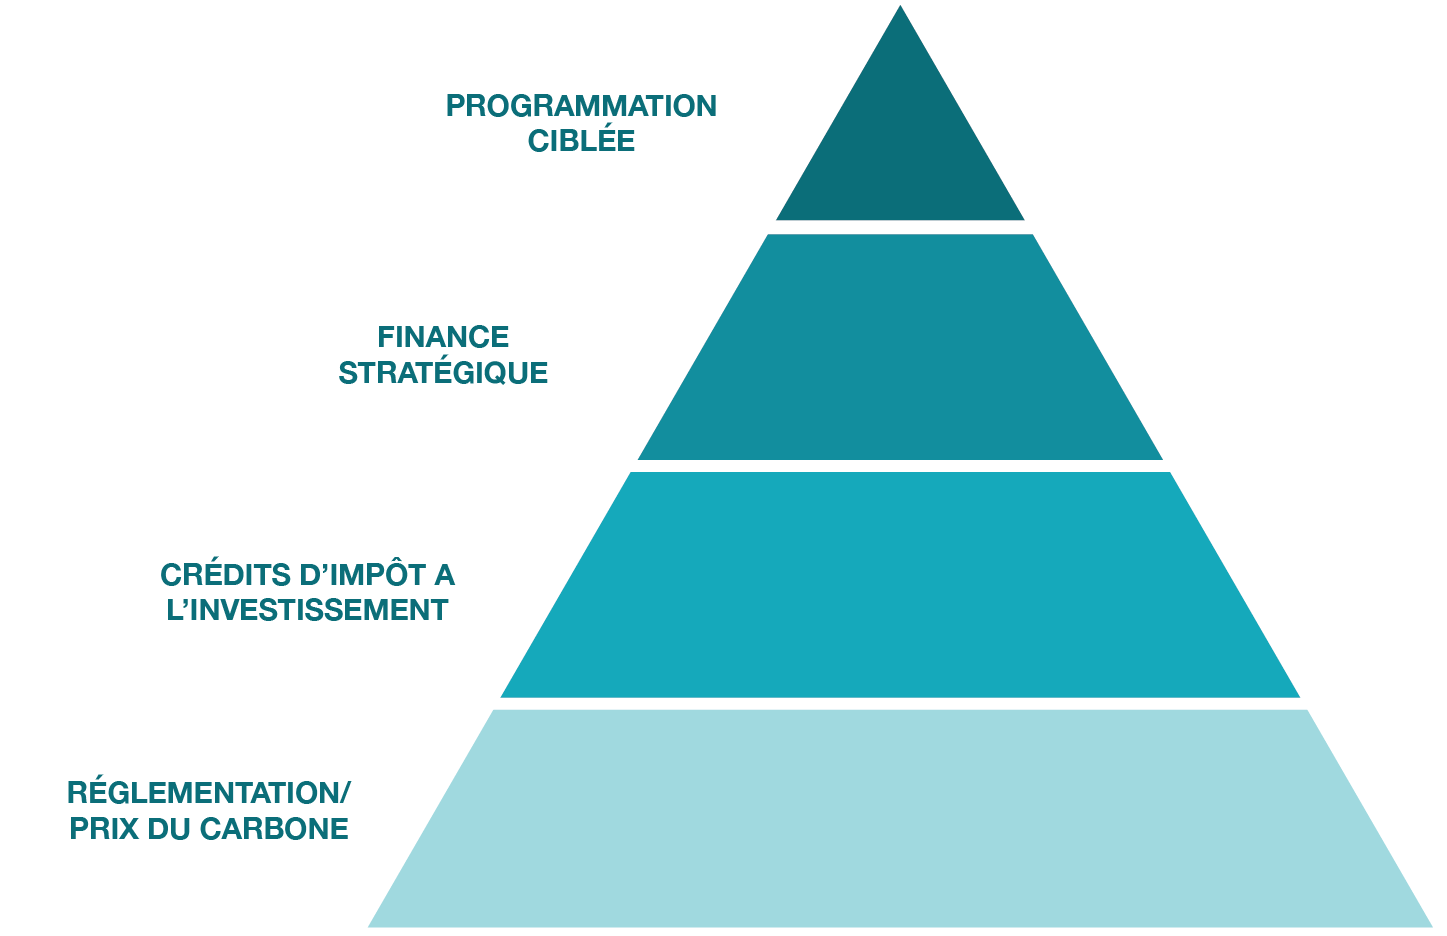 Pyramide montrant l'orientation du plan pour une économie propre. De bas en haut : Réglementation/prix du carbone, crédits d'impôt à l'investissement, financement stratégique et programmes ciblés.